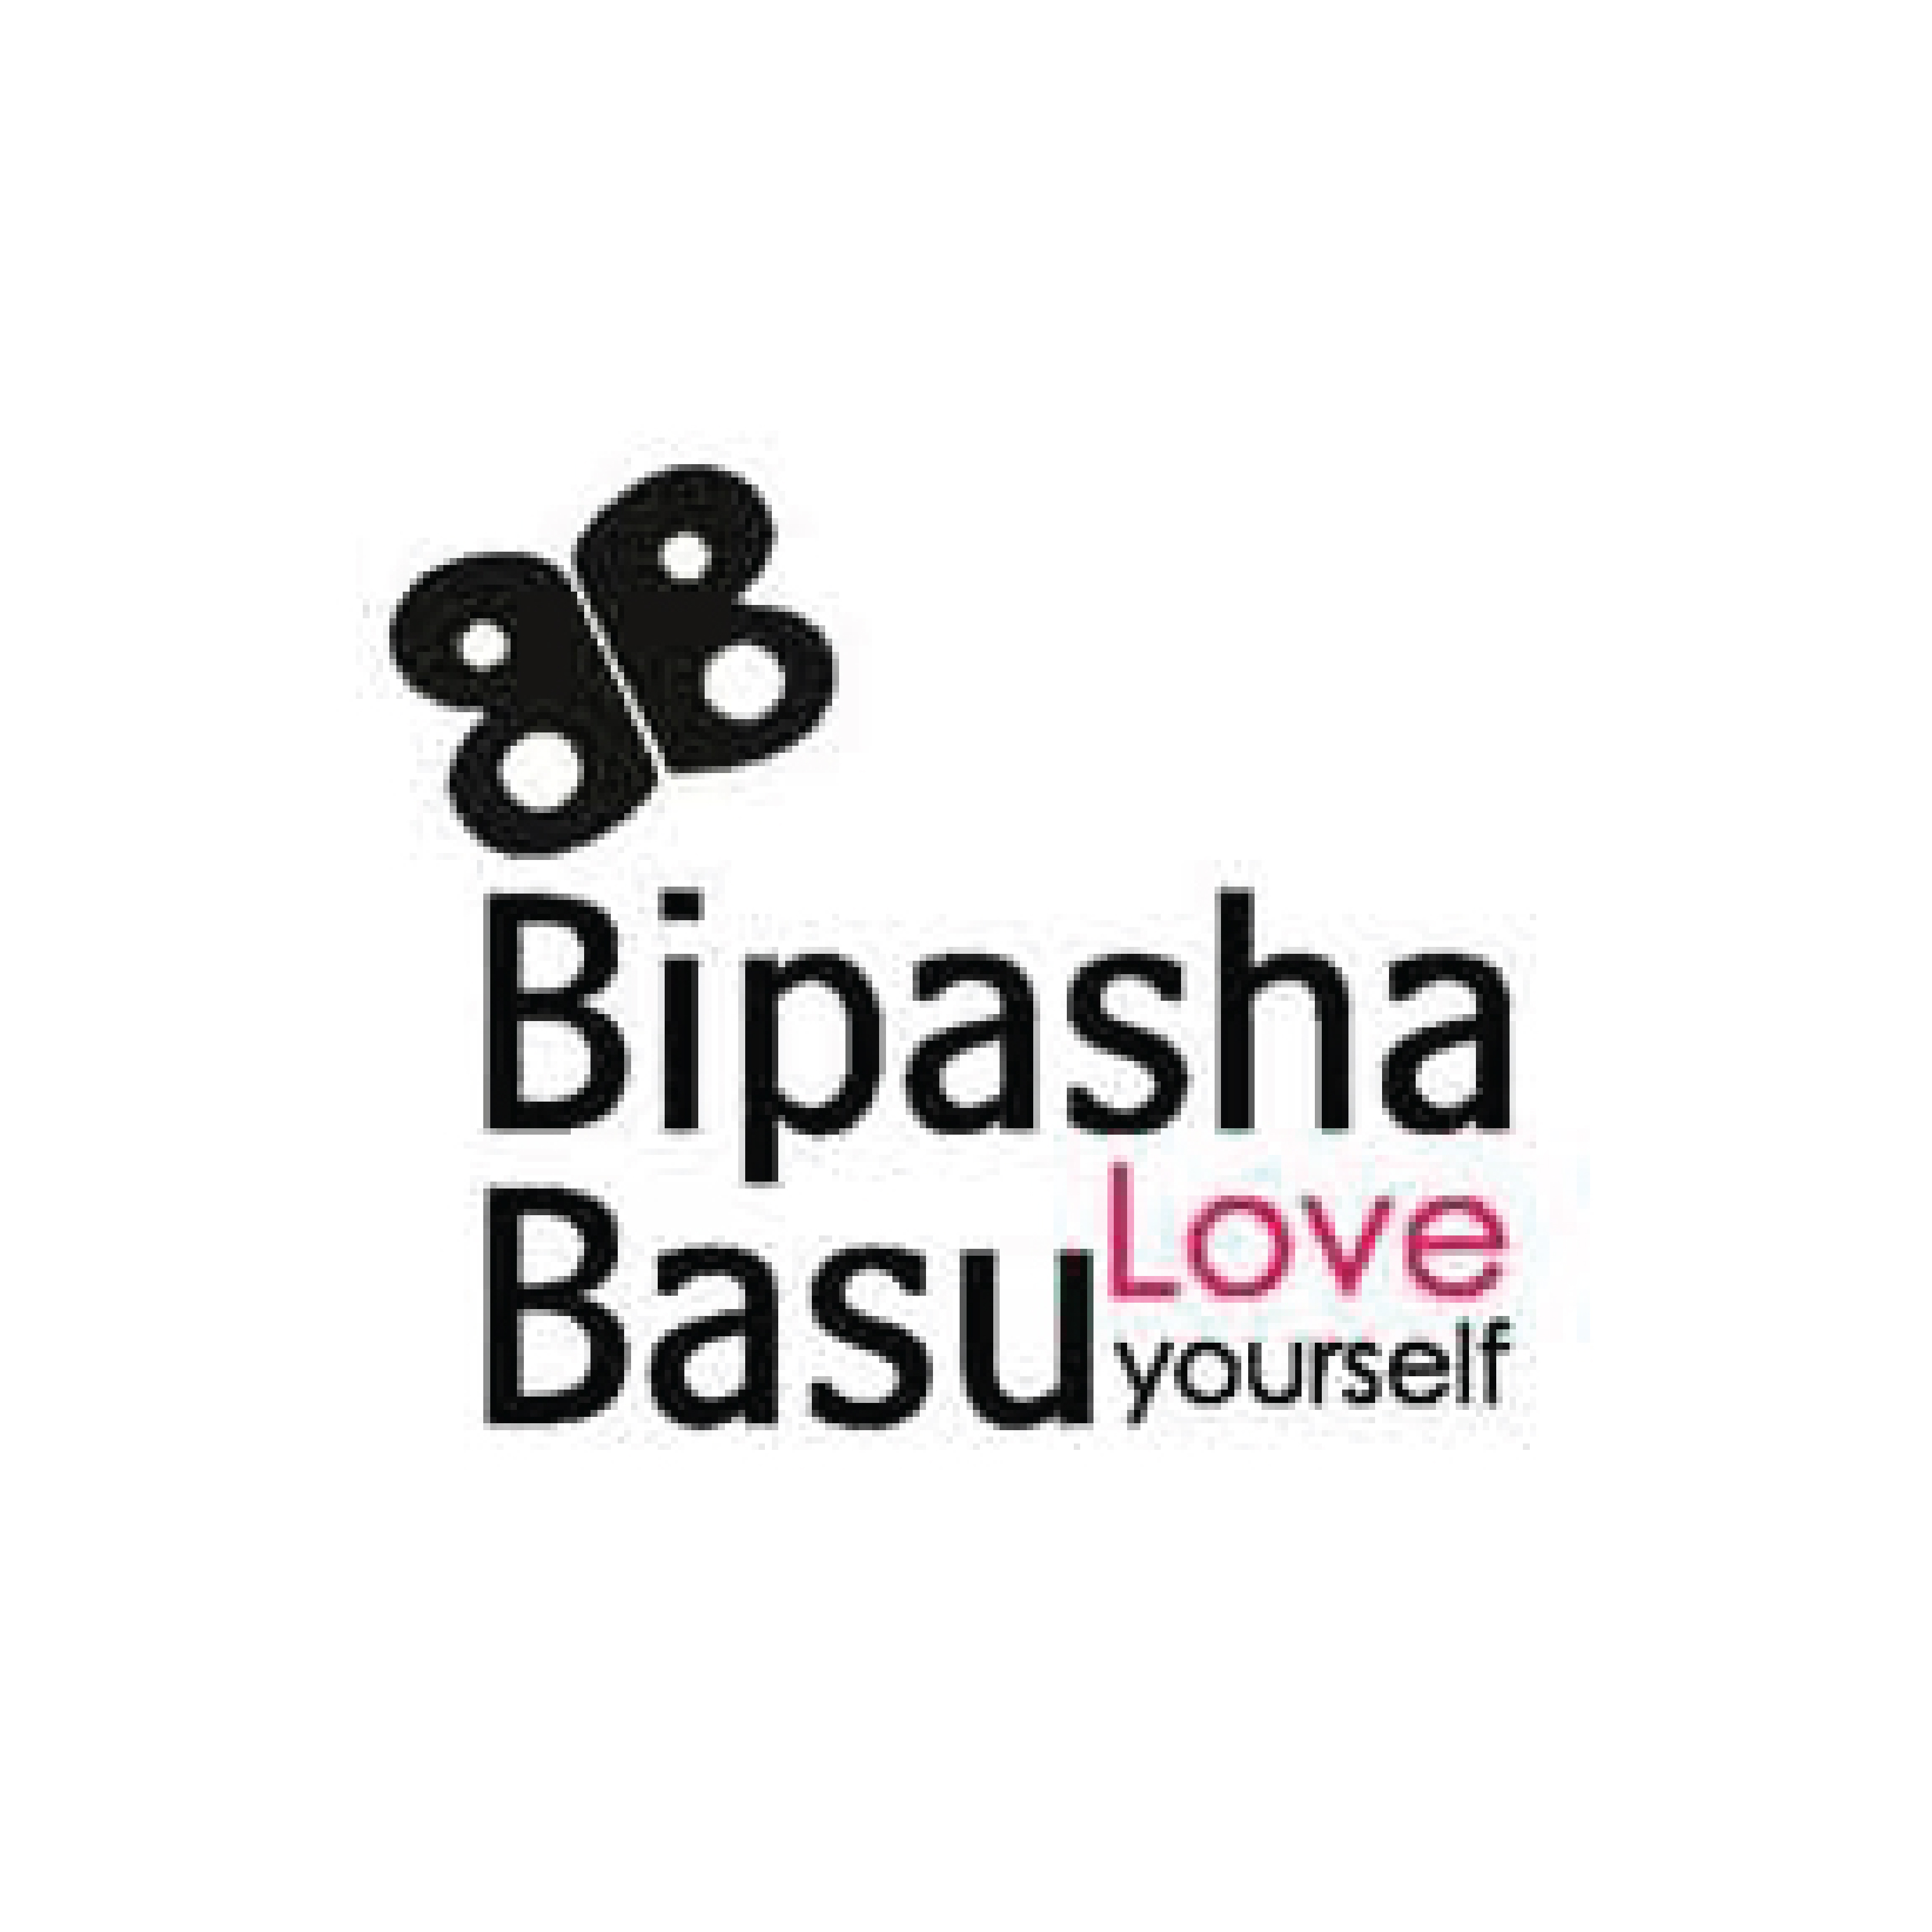 Bipasha Basu Love Yourself